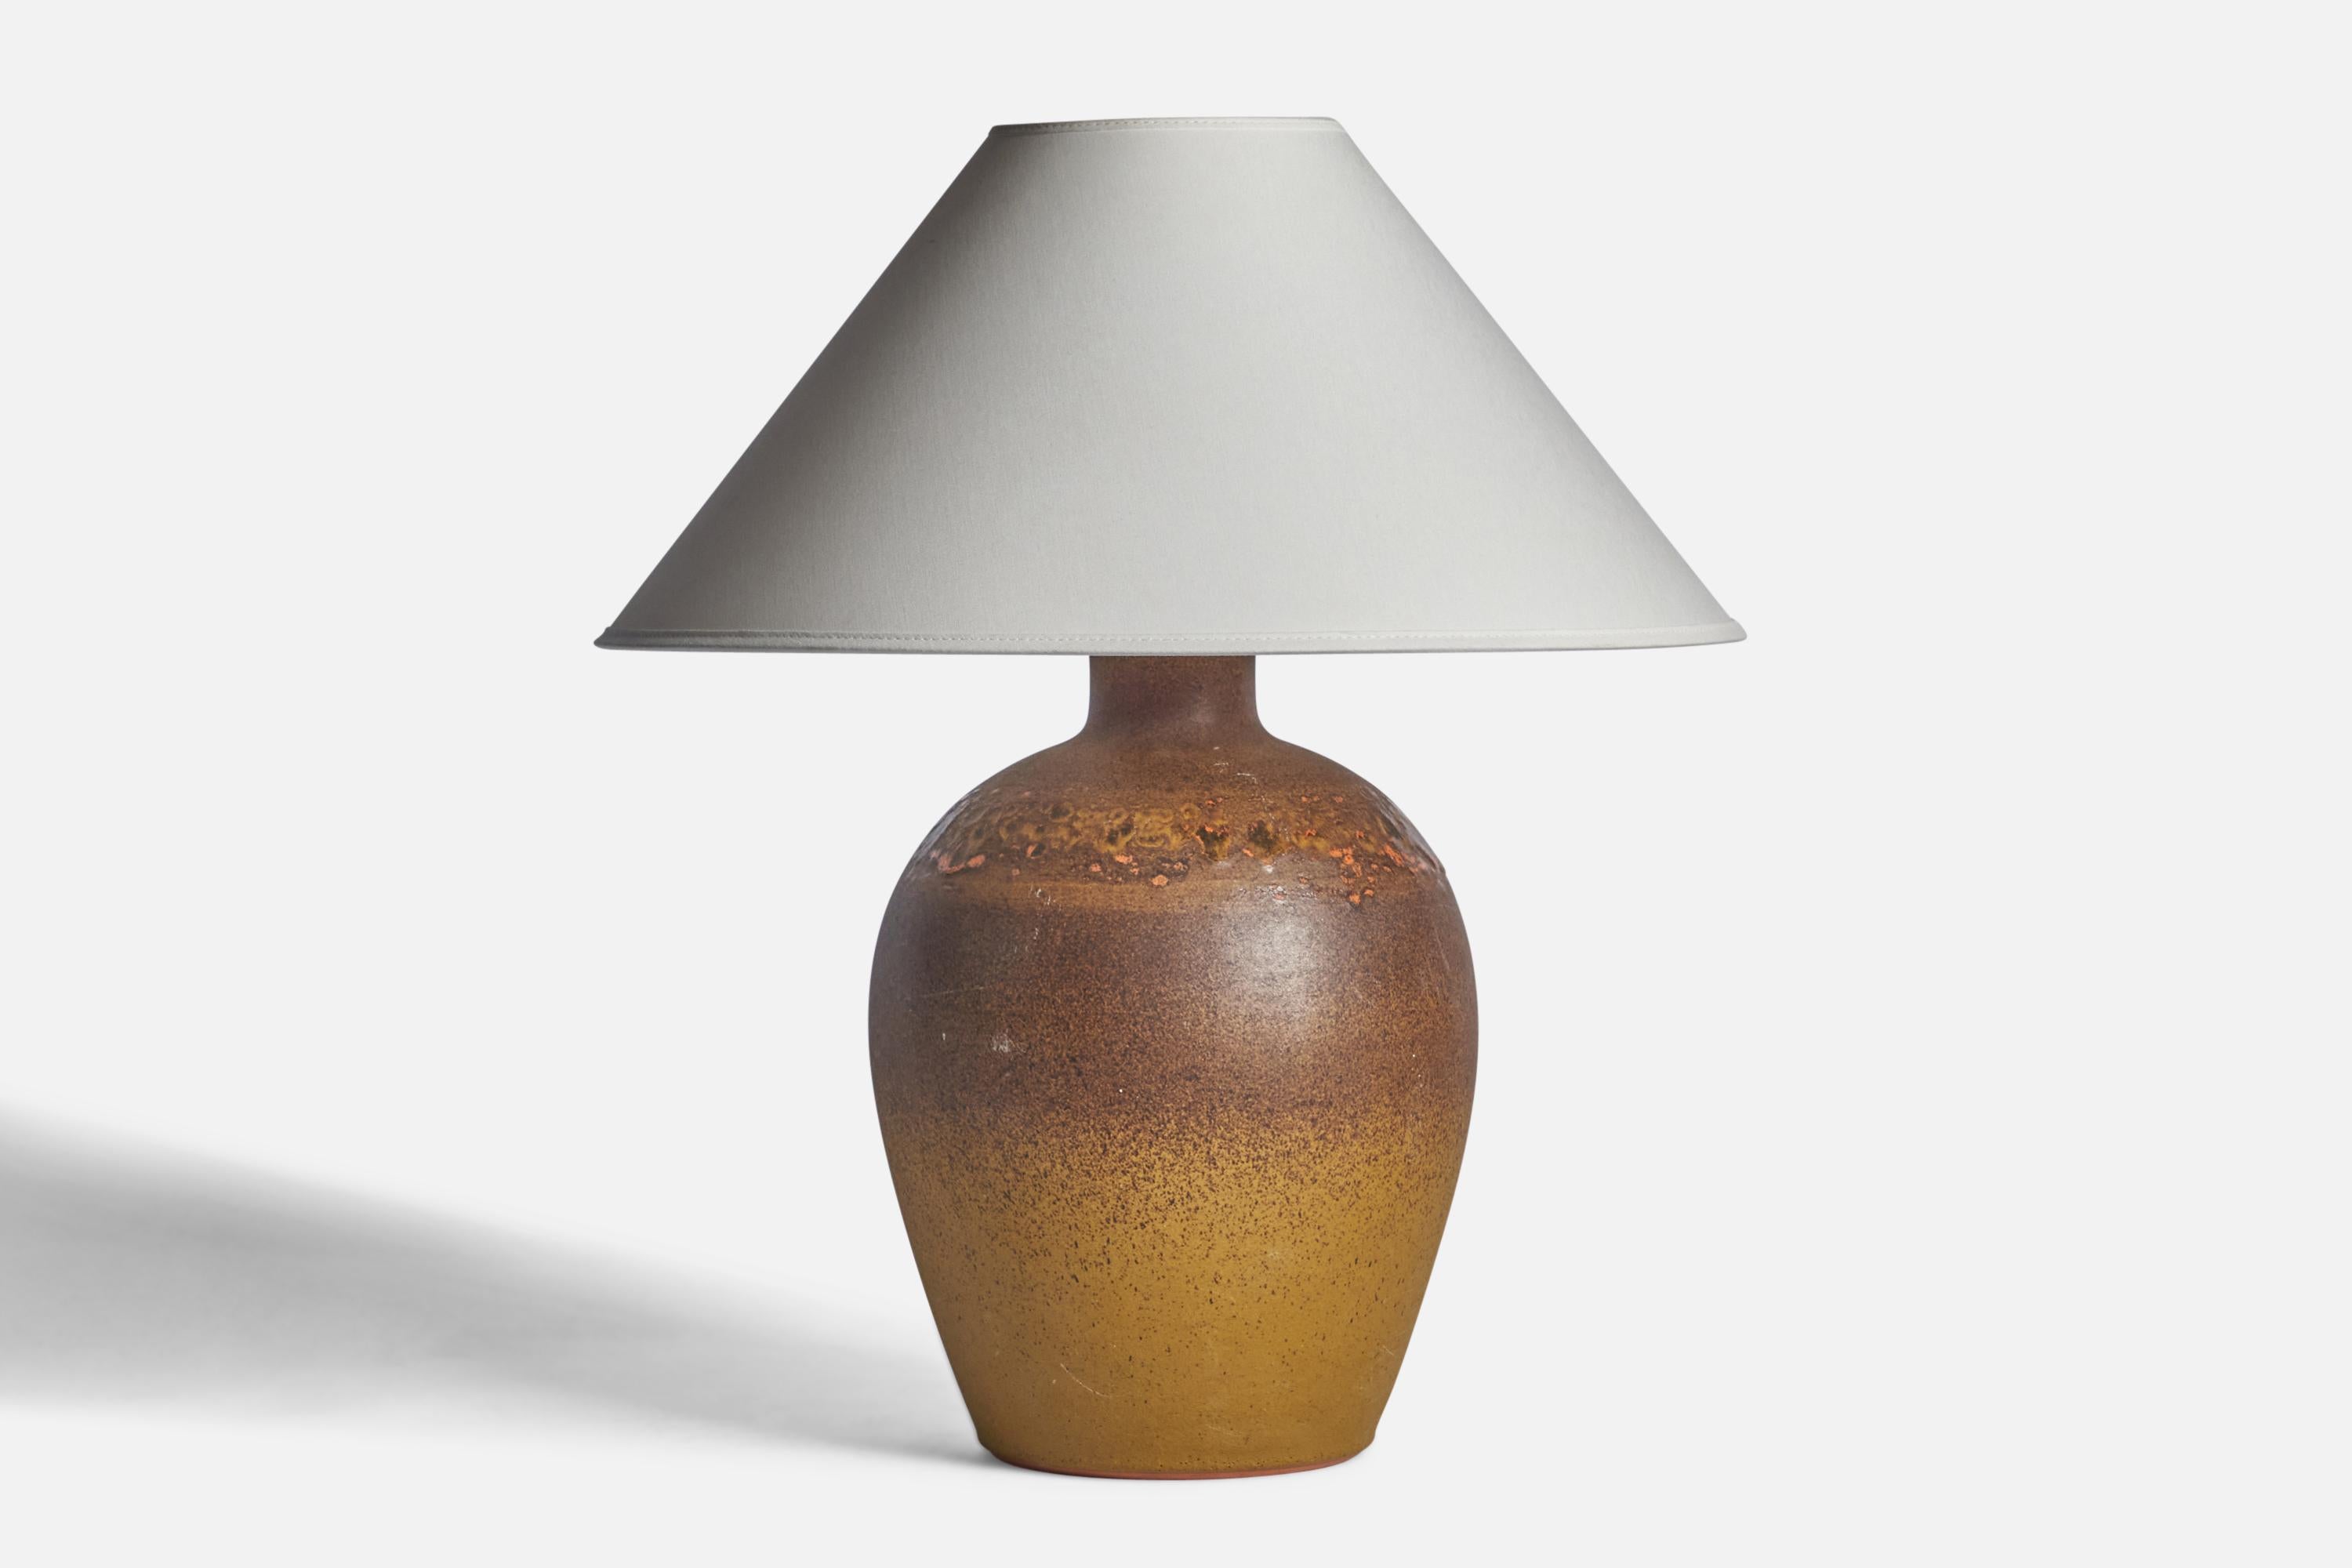 Tischlampe aus braunem und gelb glasiertem Steingut, entworfen und hergestellt von Tilgmans Keramik, Schweden, 1960er Jahre.

Abmessungen der Lampe (Zoll): 14,25